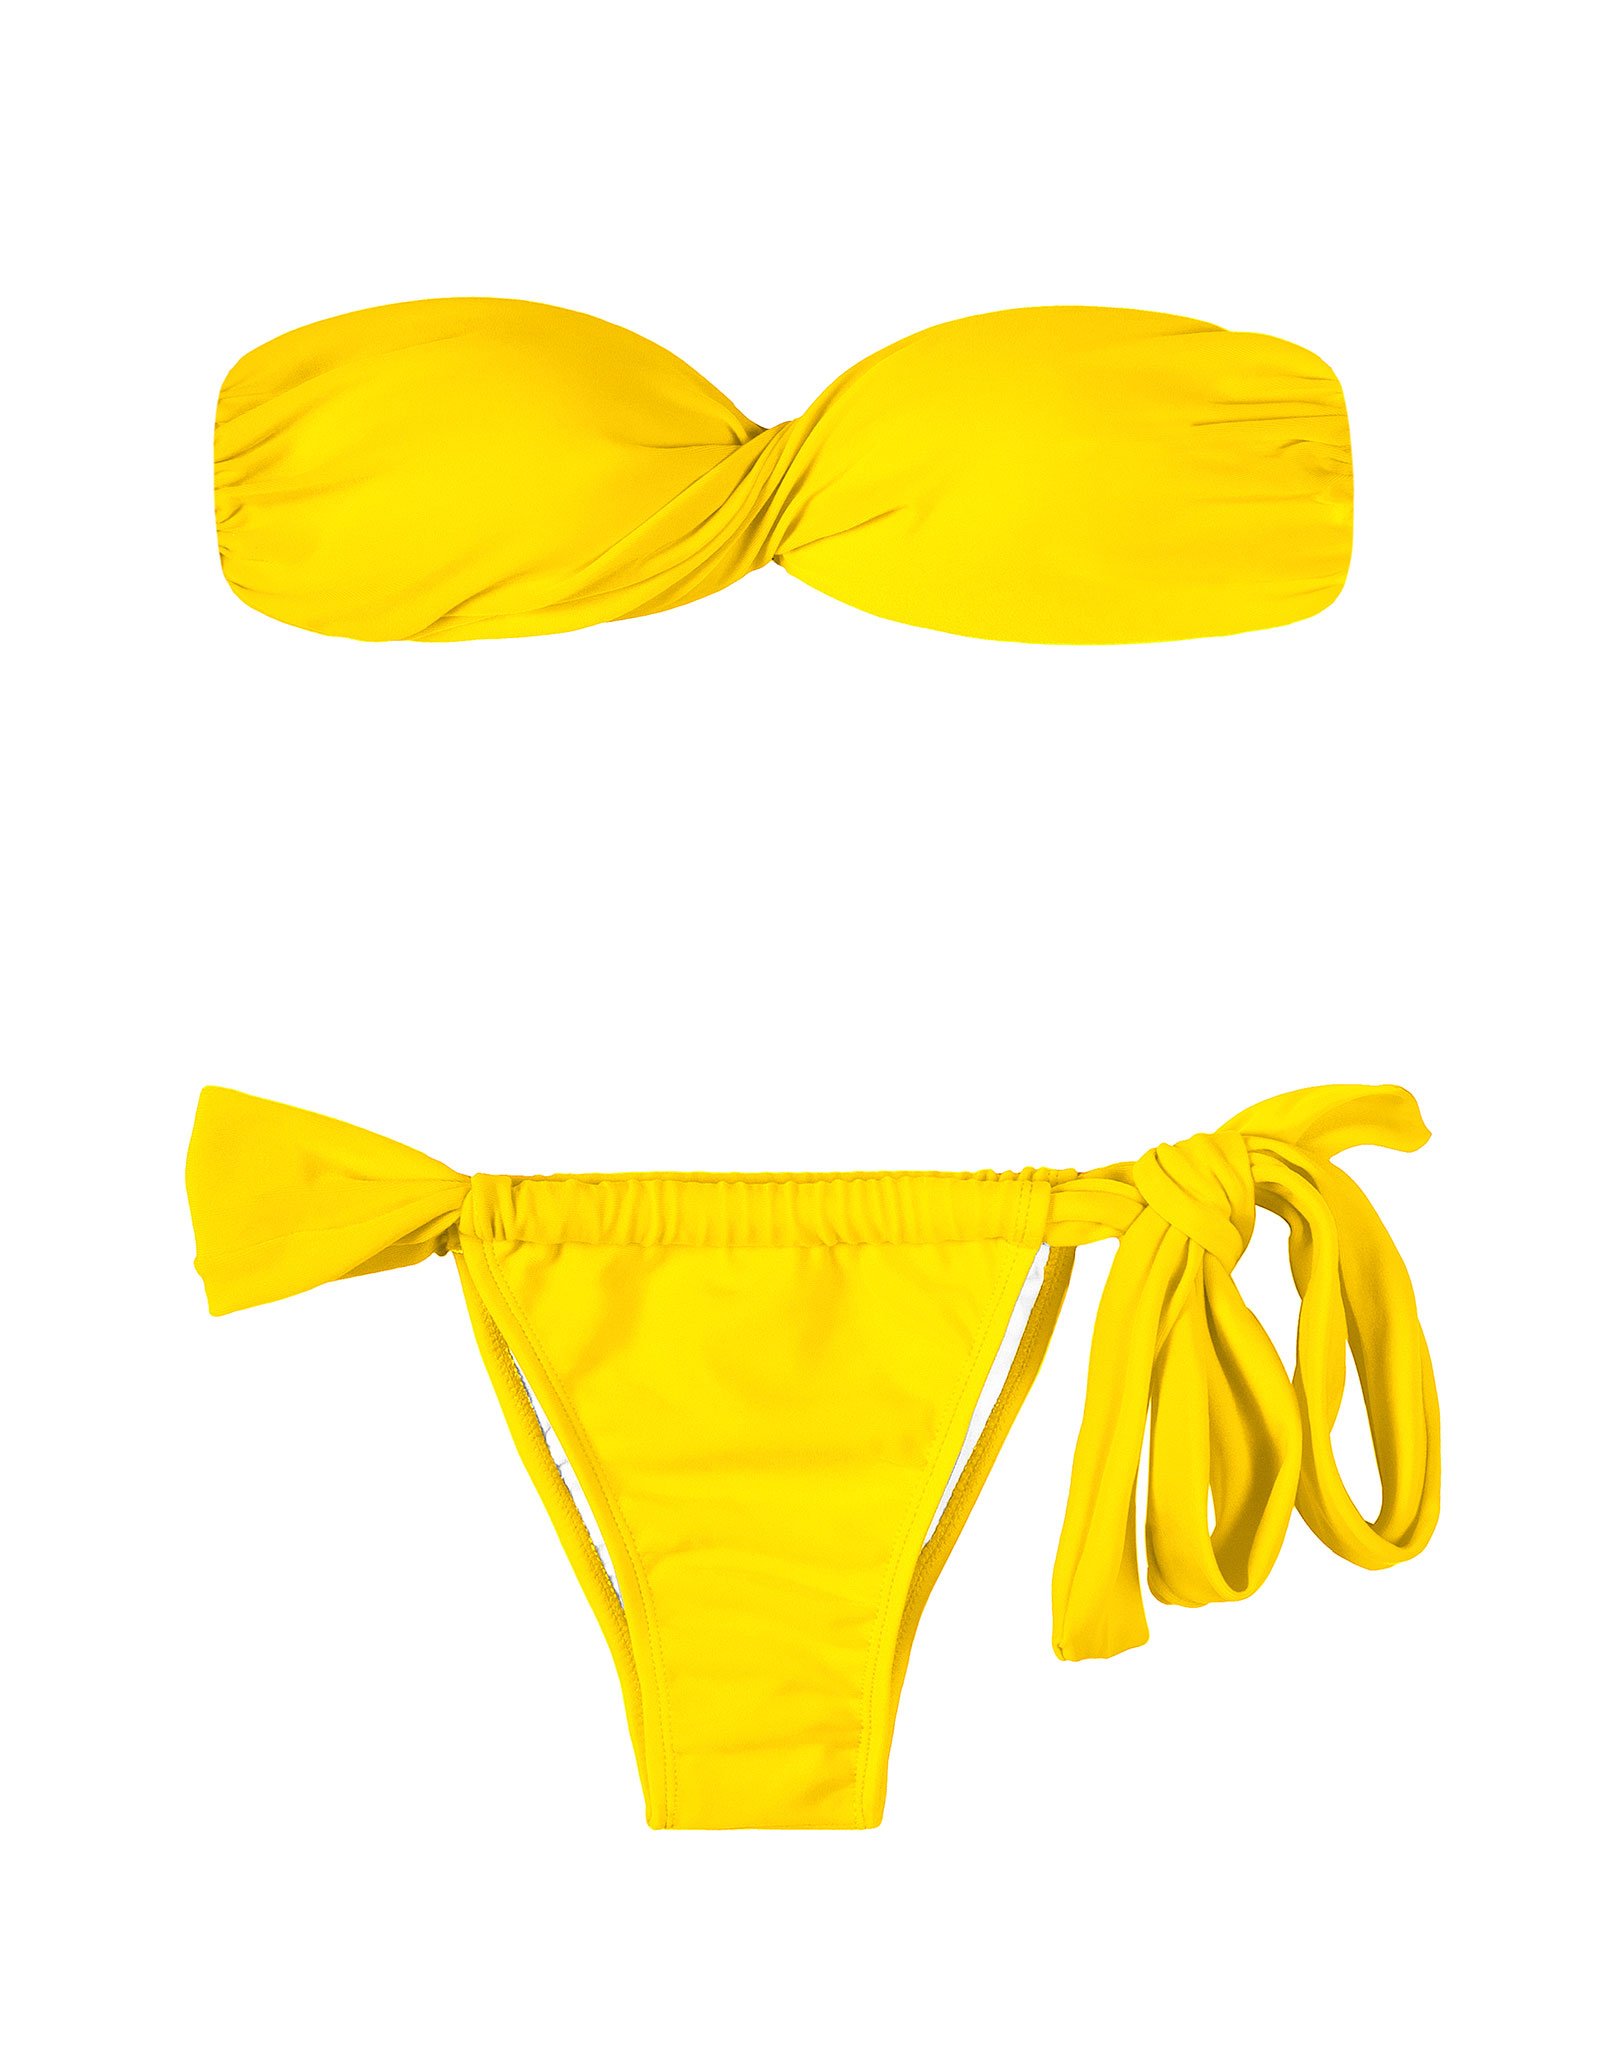 ツーピース水着 黄色いシェル型バンドゥビキニ Ipe Torcido Lace ブランド Rio De Sol